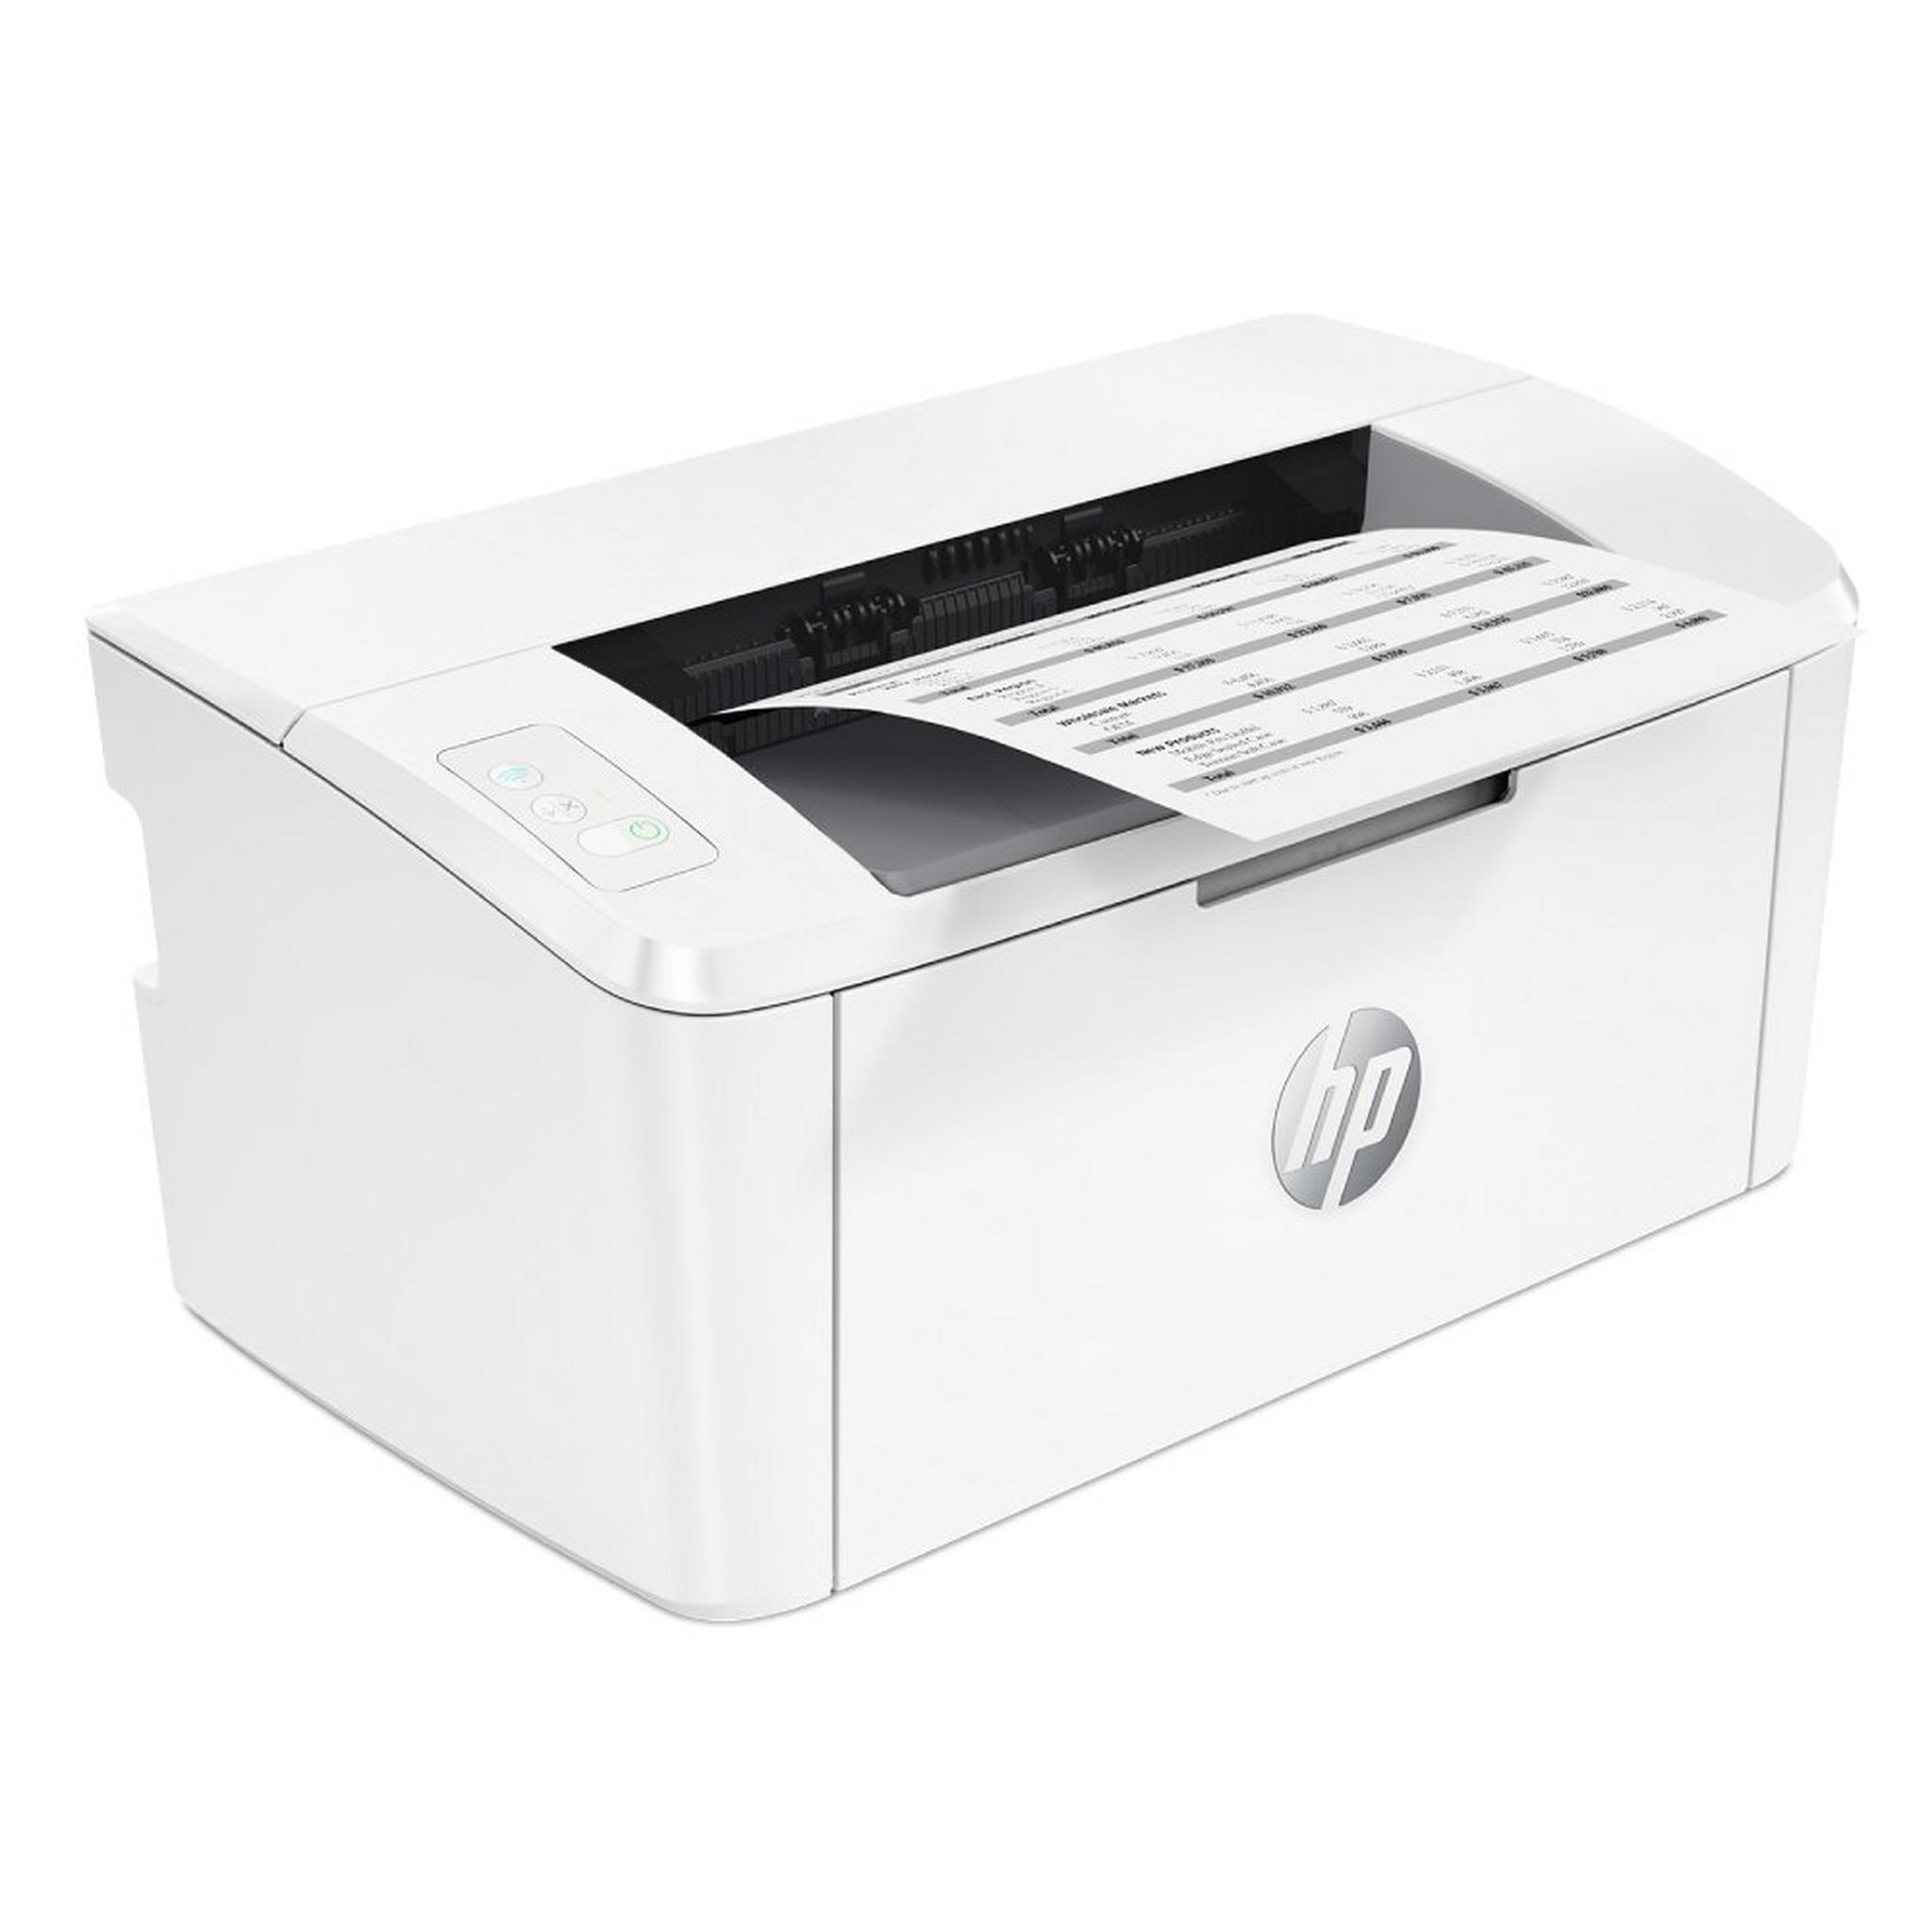 HP LaserJet M111w Mono Printer, 7MD68A - White